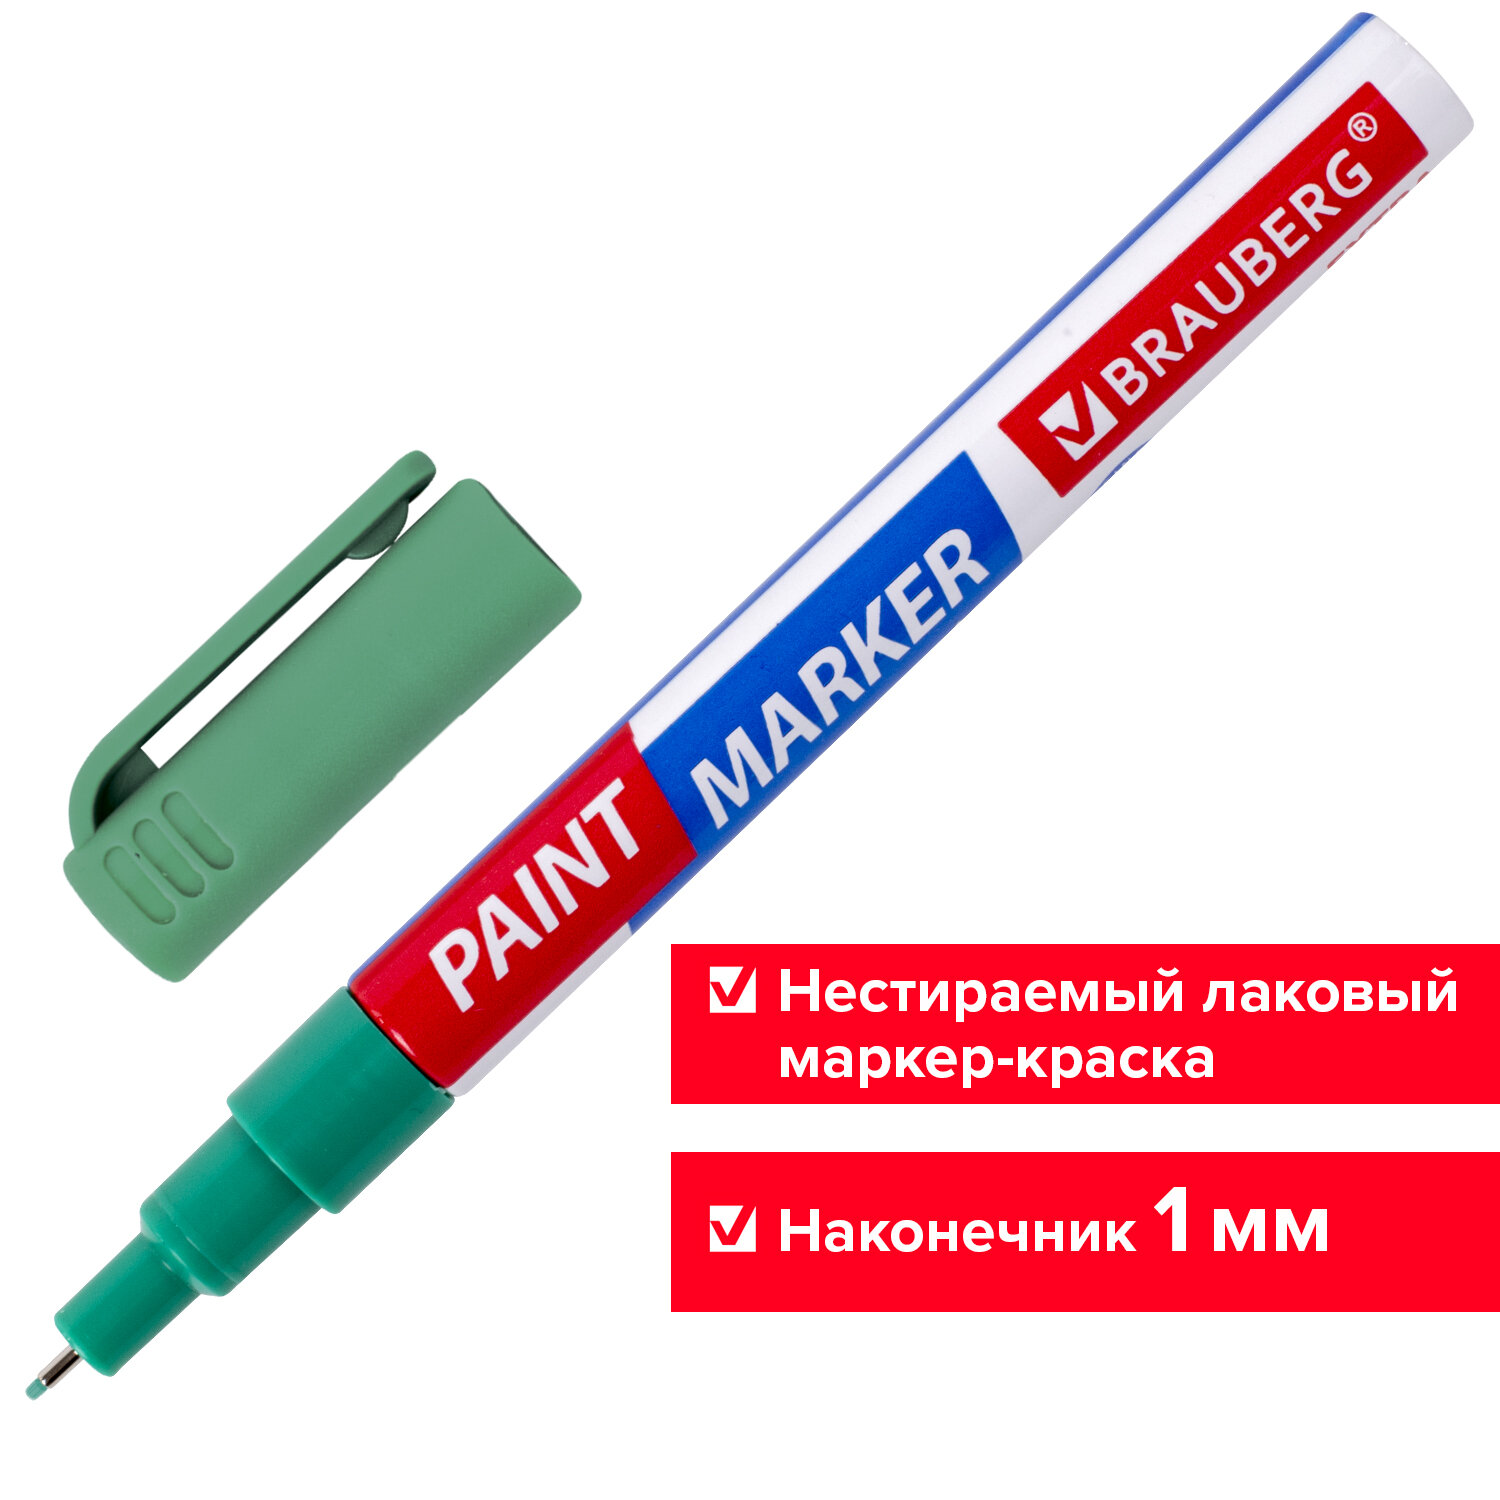 Маркер-краска лаковый 4 мм, зеленая, усиленная нитро-основа BRAUBERG. Paint Marker BRAUBERG. Маркер 1. БРАУБЕРГ маркер красный.